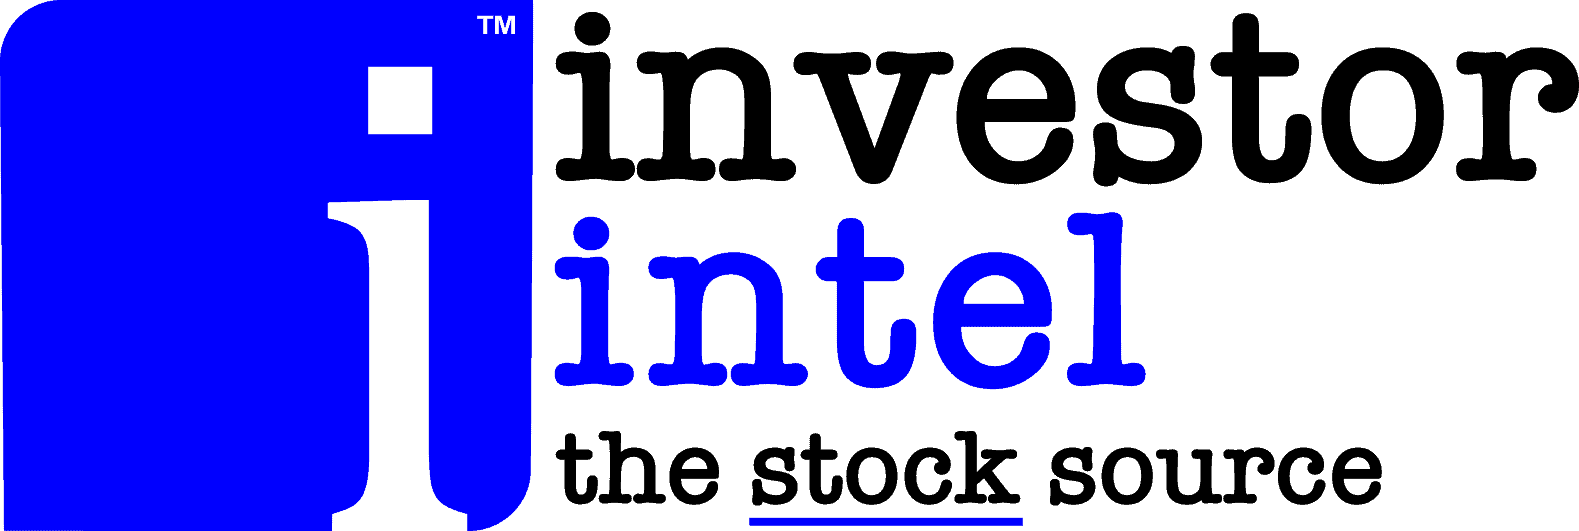 investorintel logo